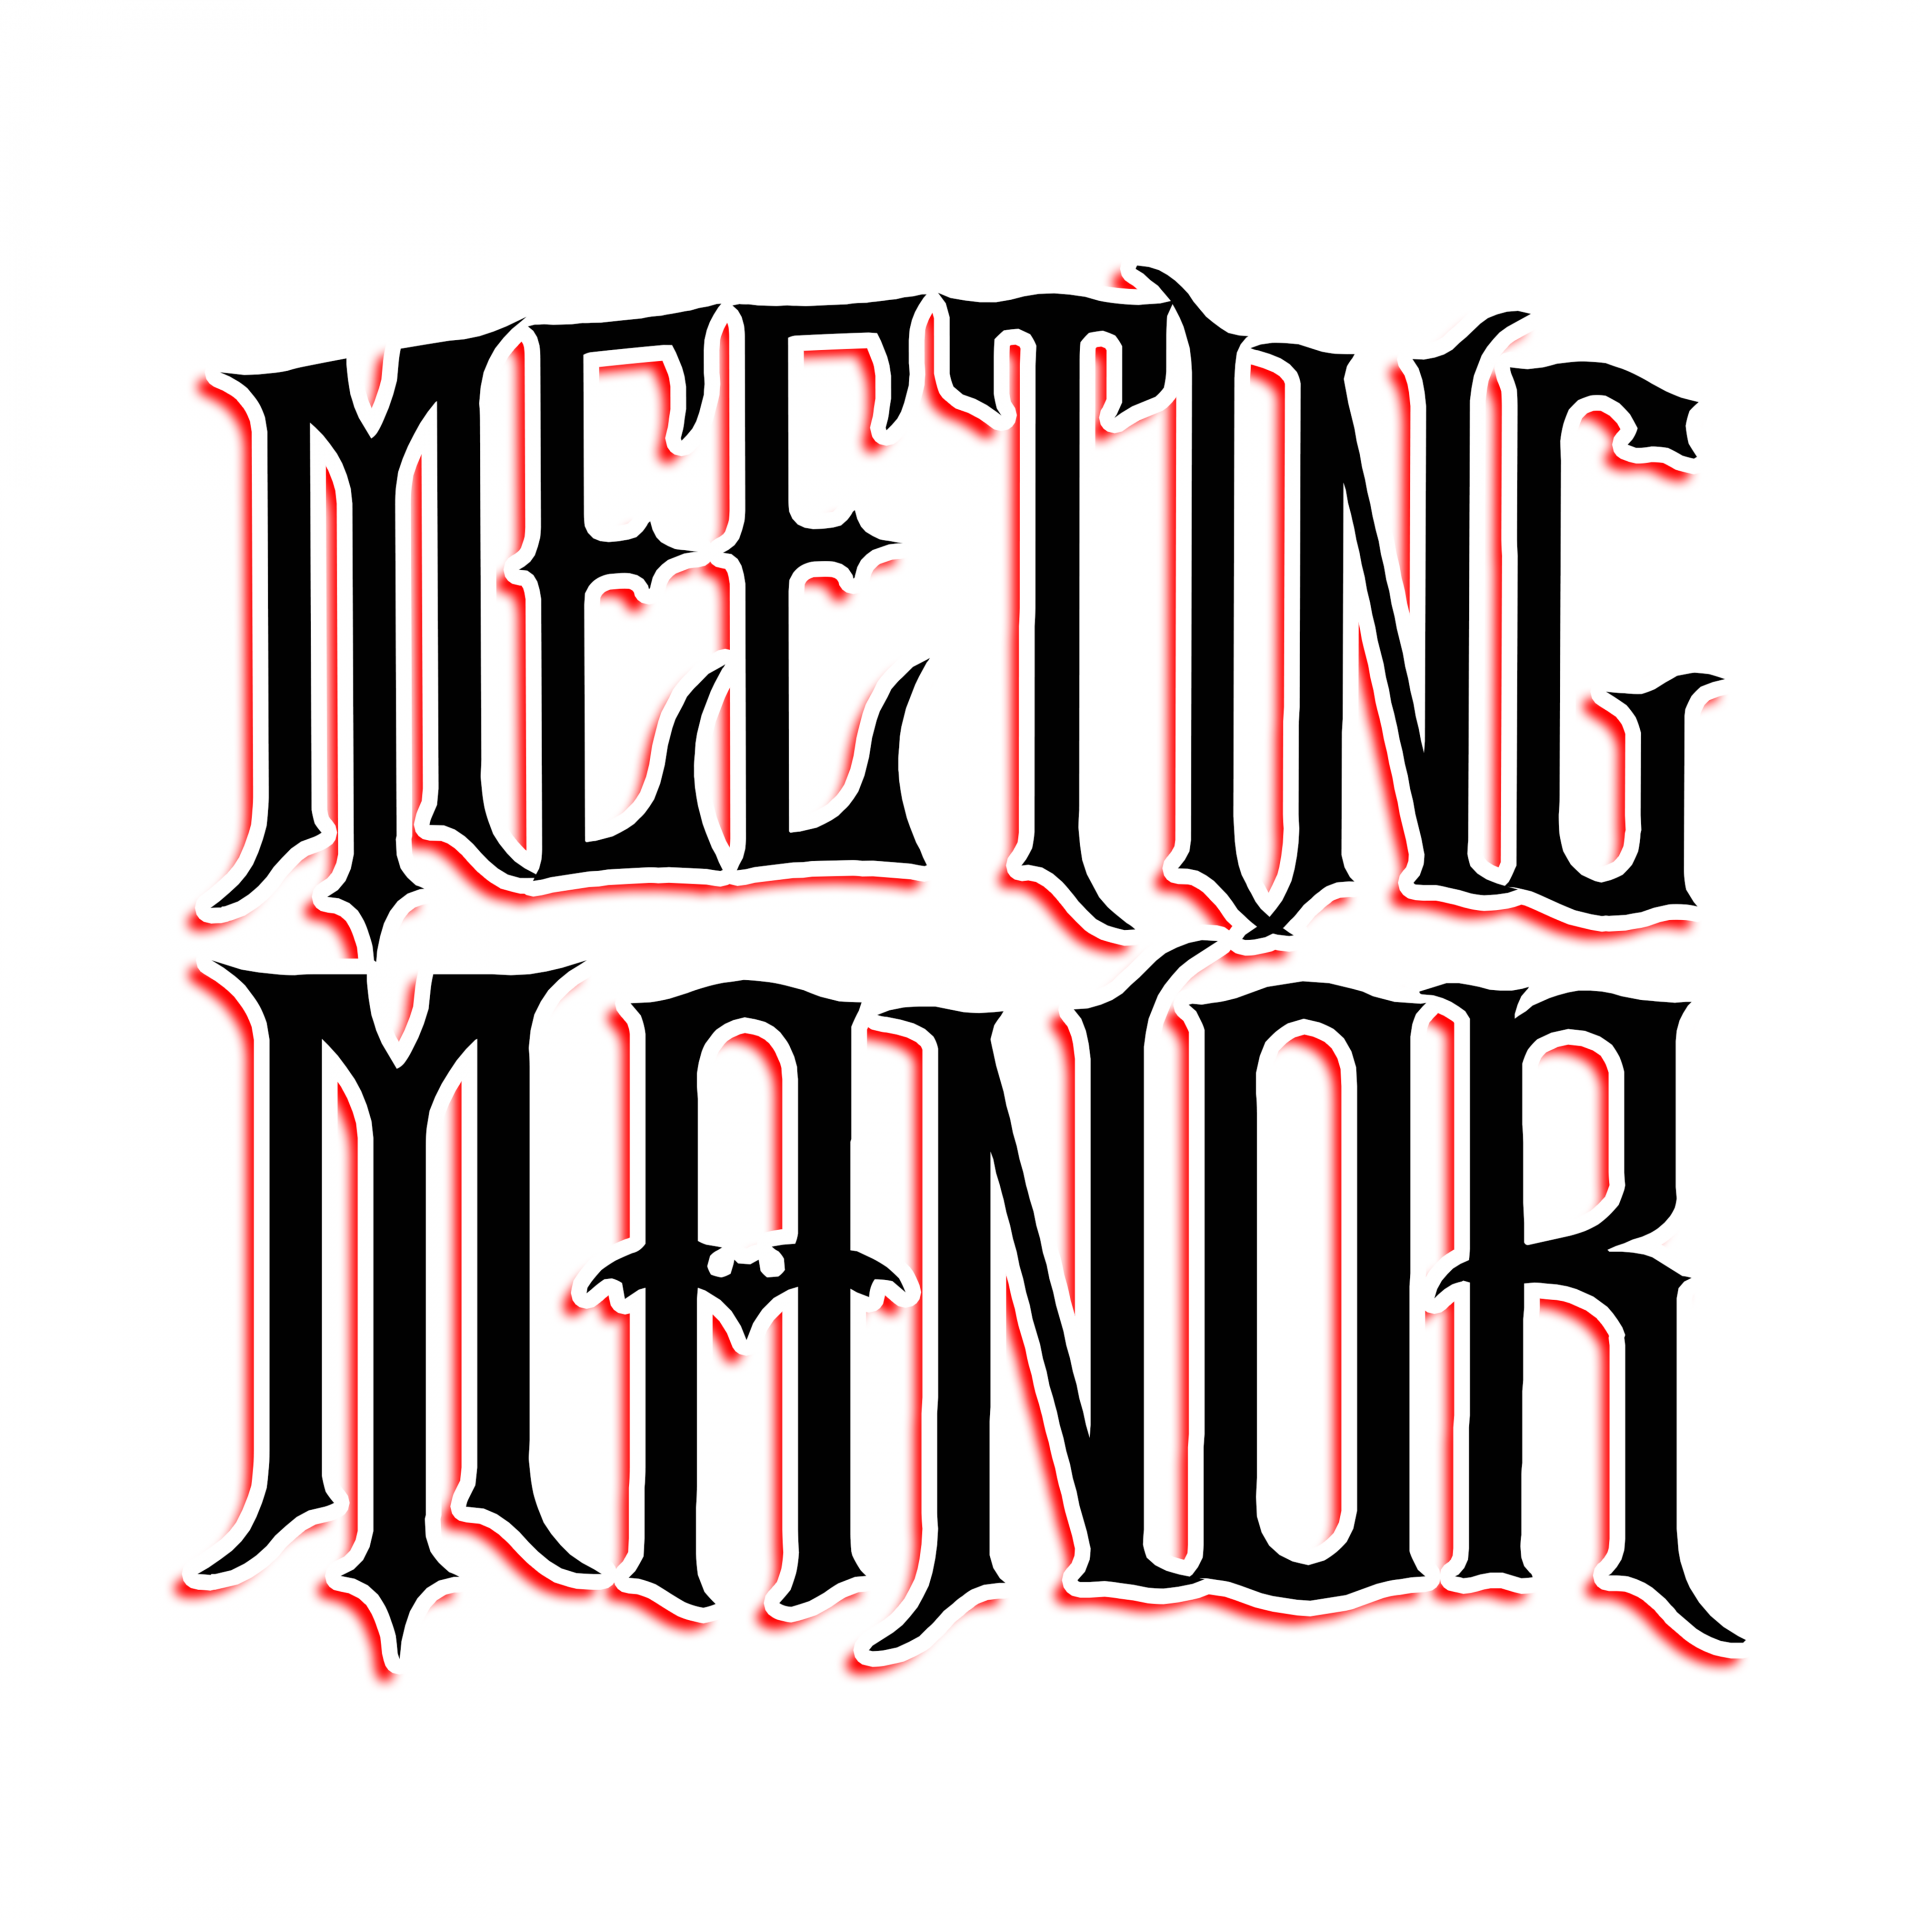 Logo meeting manor